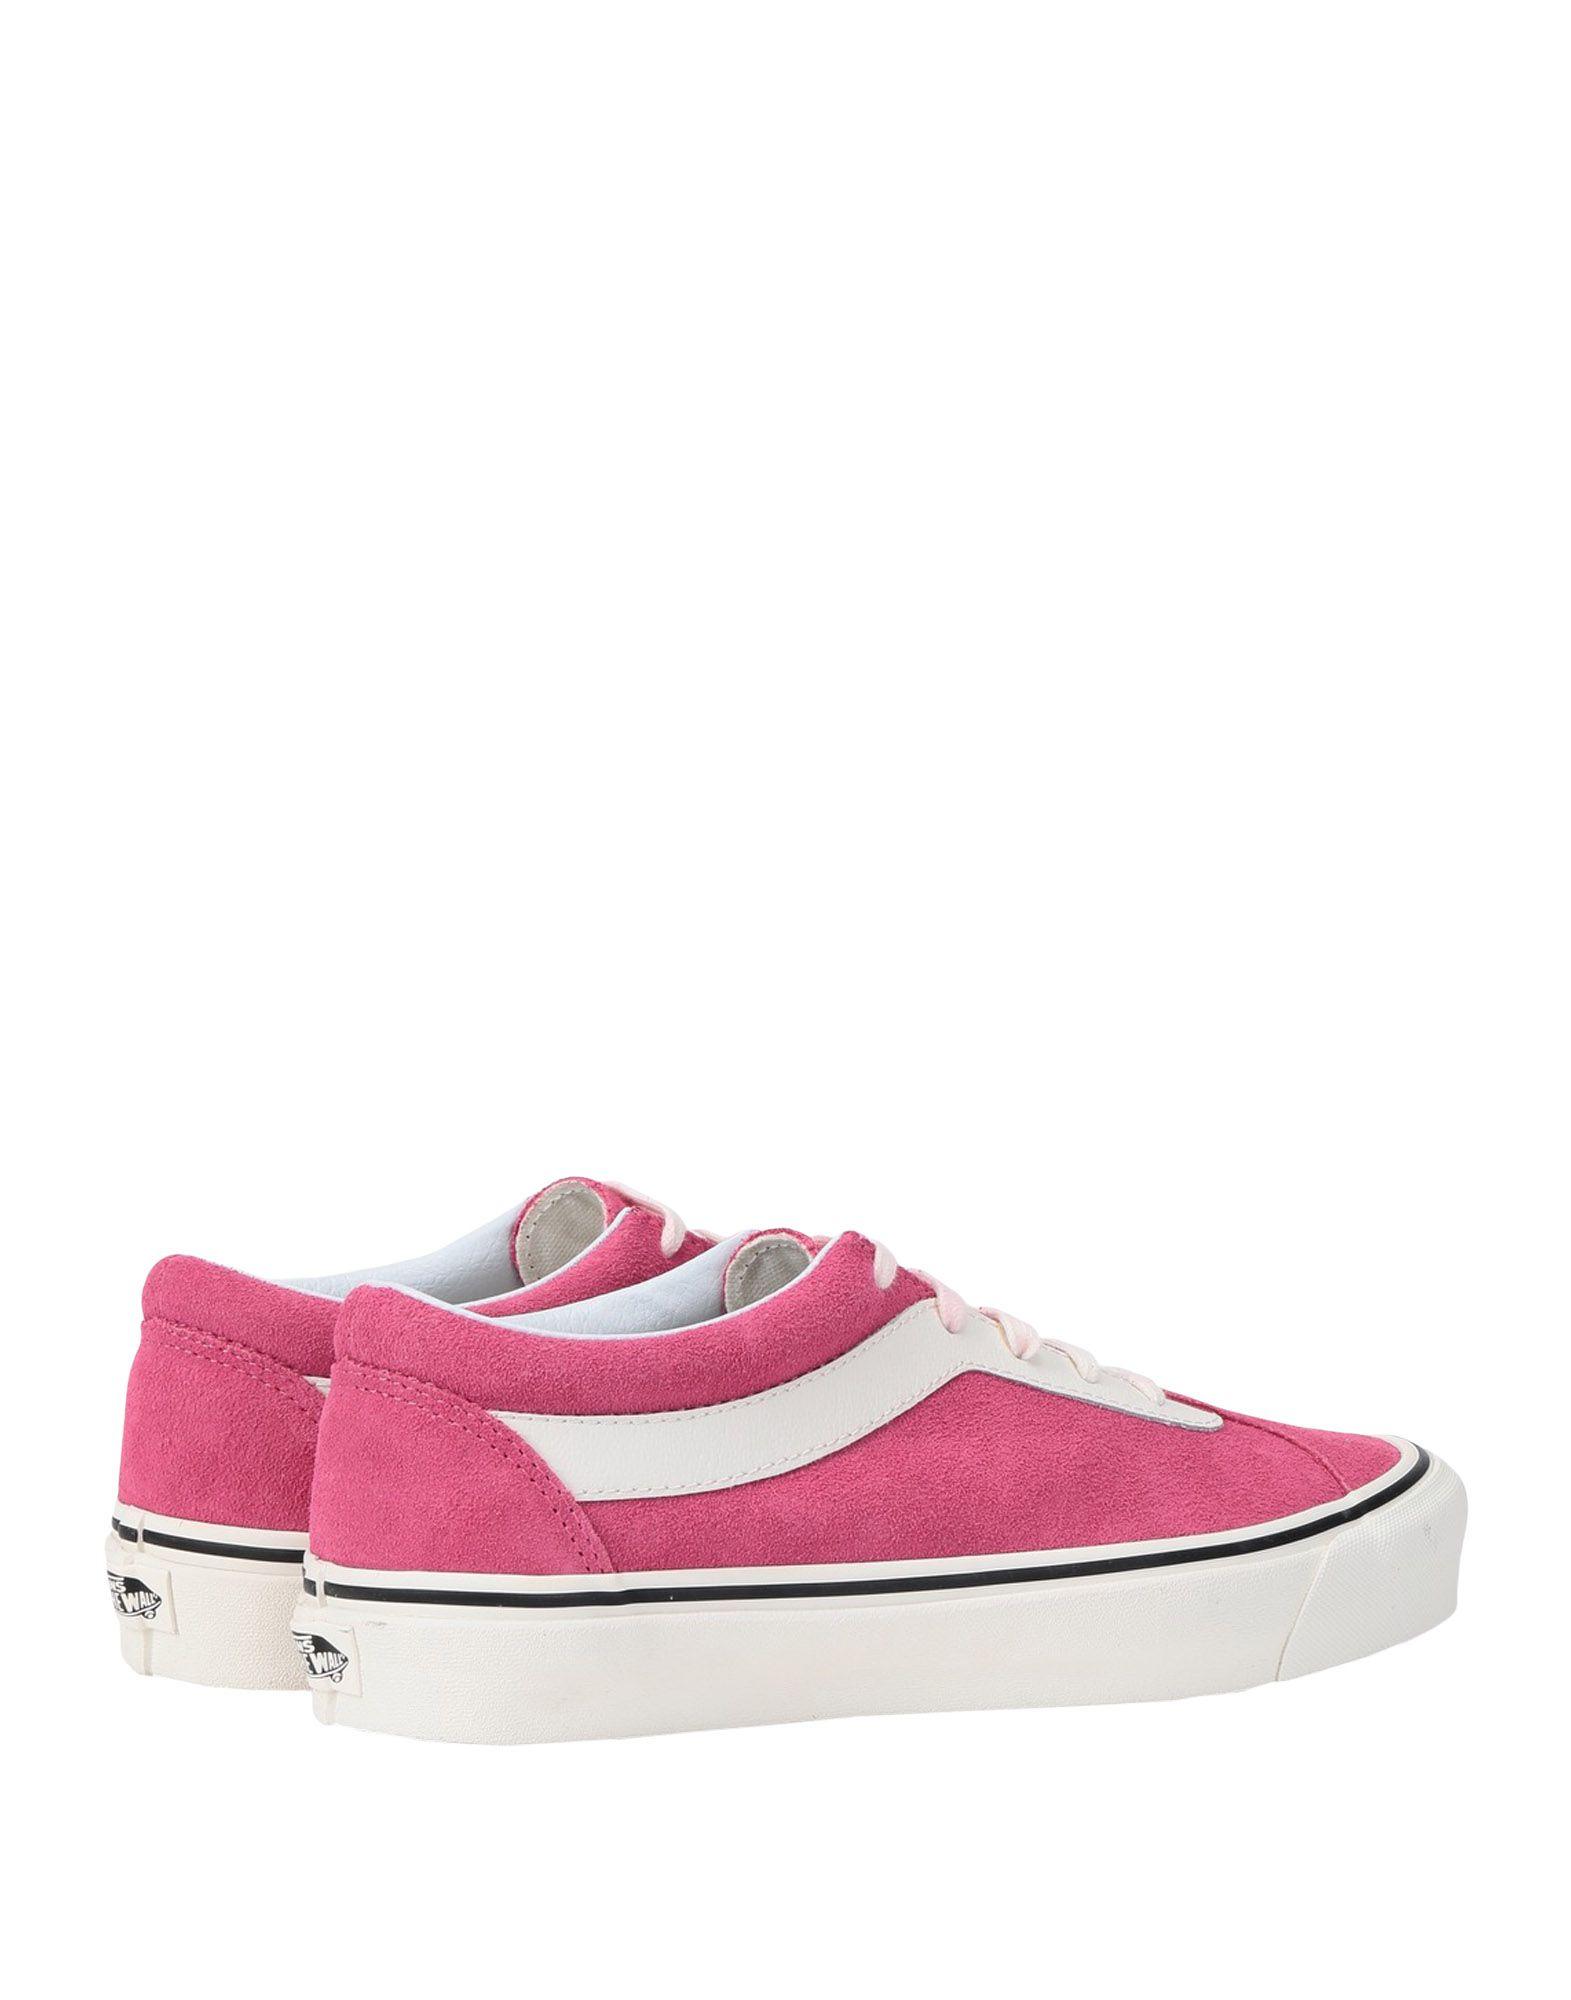 Vans Low-tops & Sneakers in Fuchsia (Pink) - Lyst